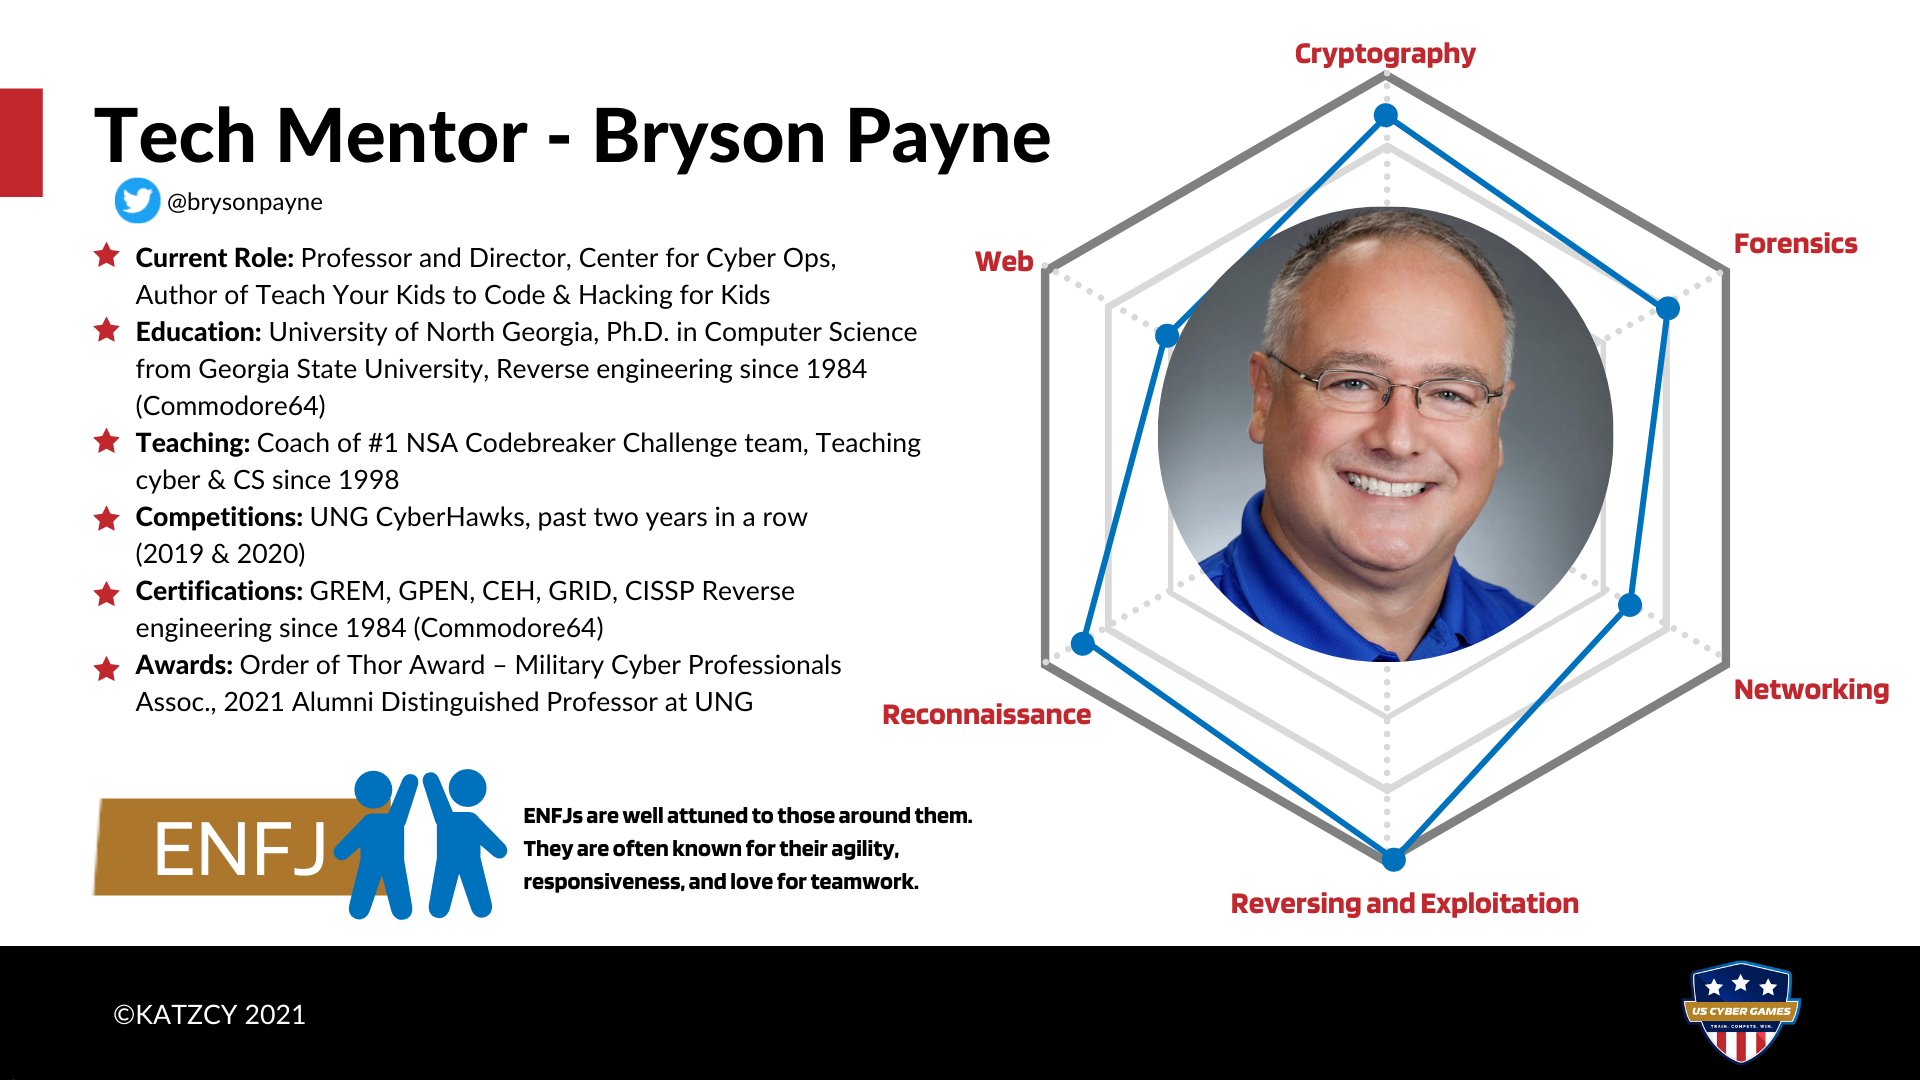 Meet US Cyber Team Tech Mentor Bryson Payne